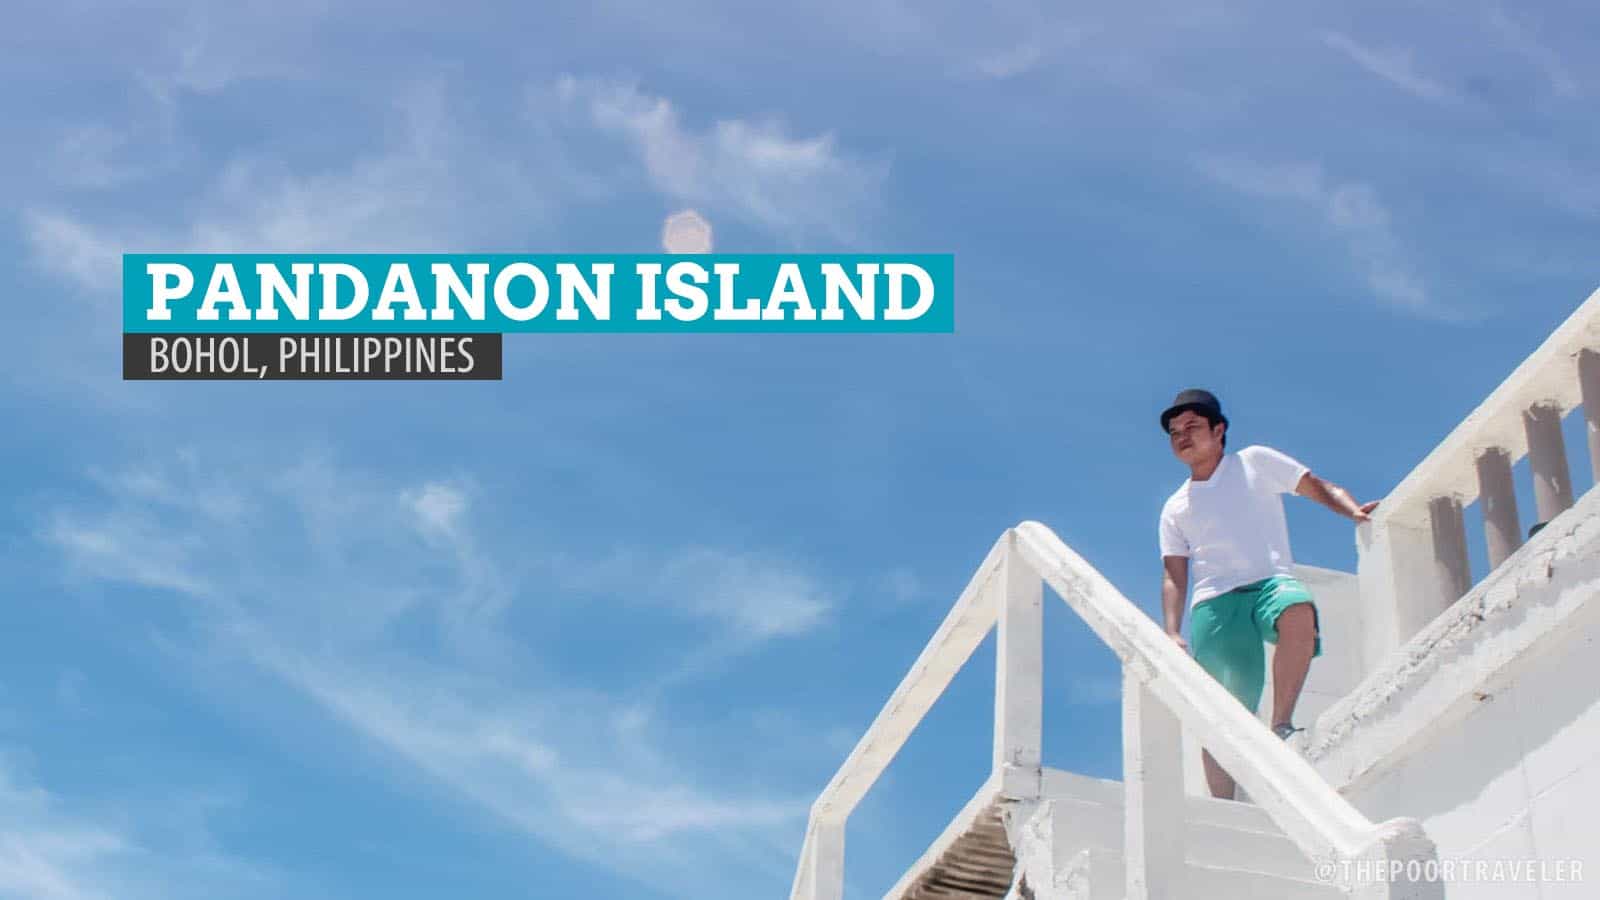 潘达农岛:从宿务出发的一段旅程